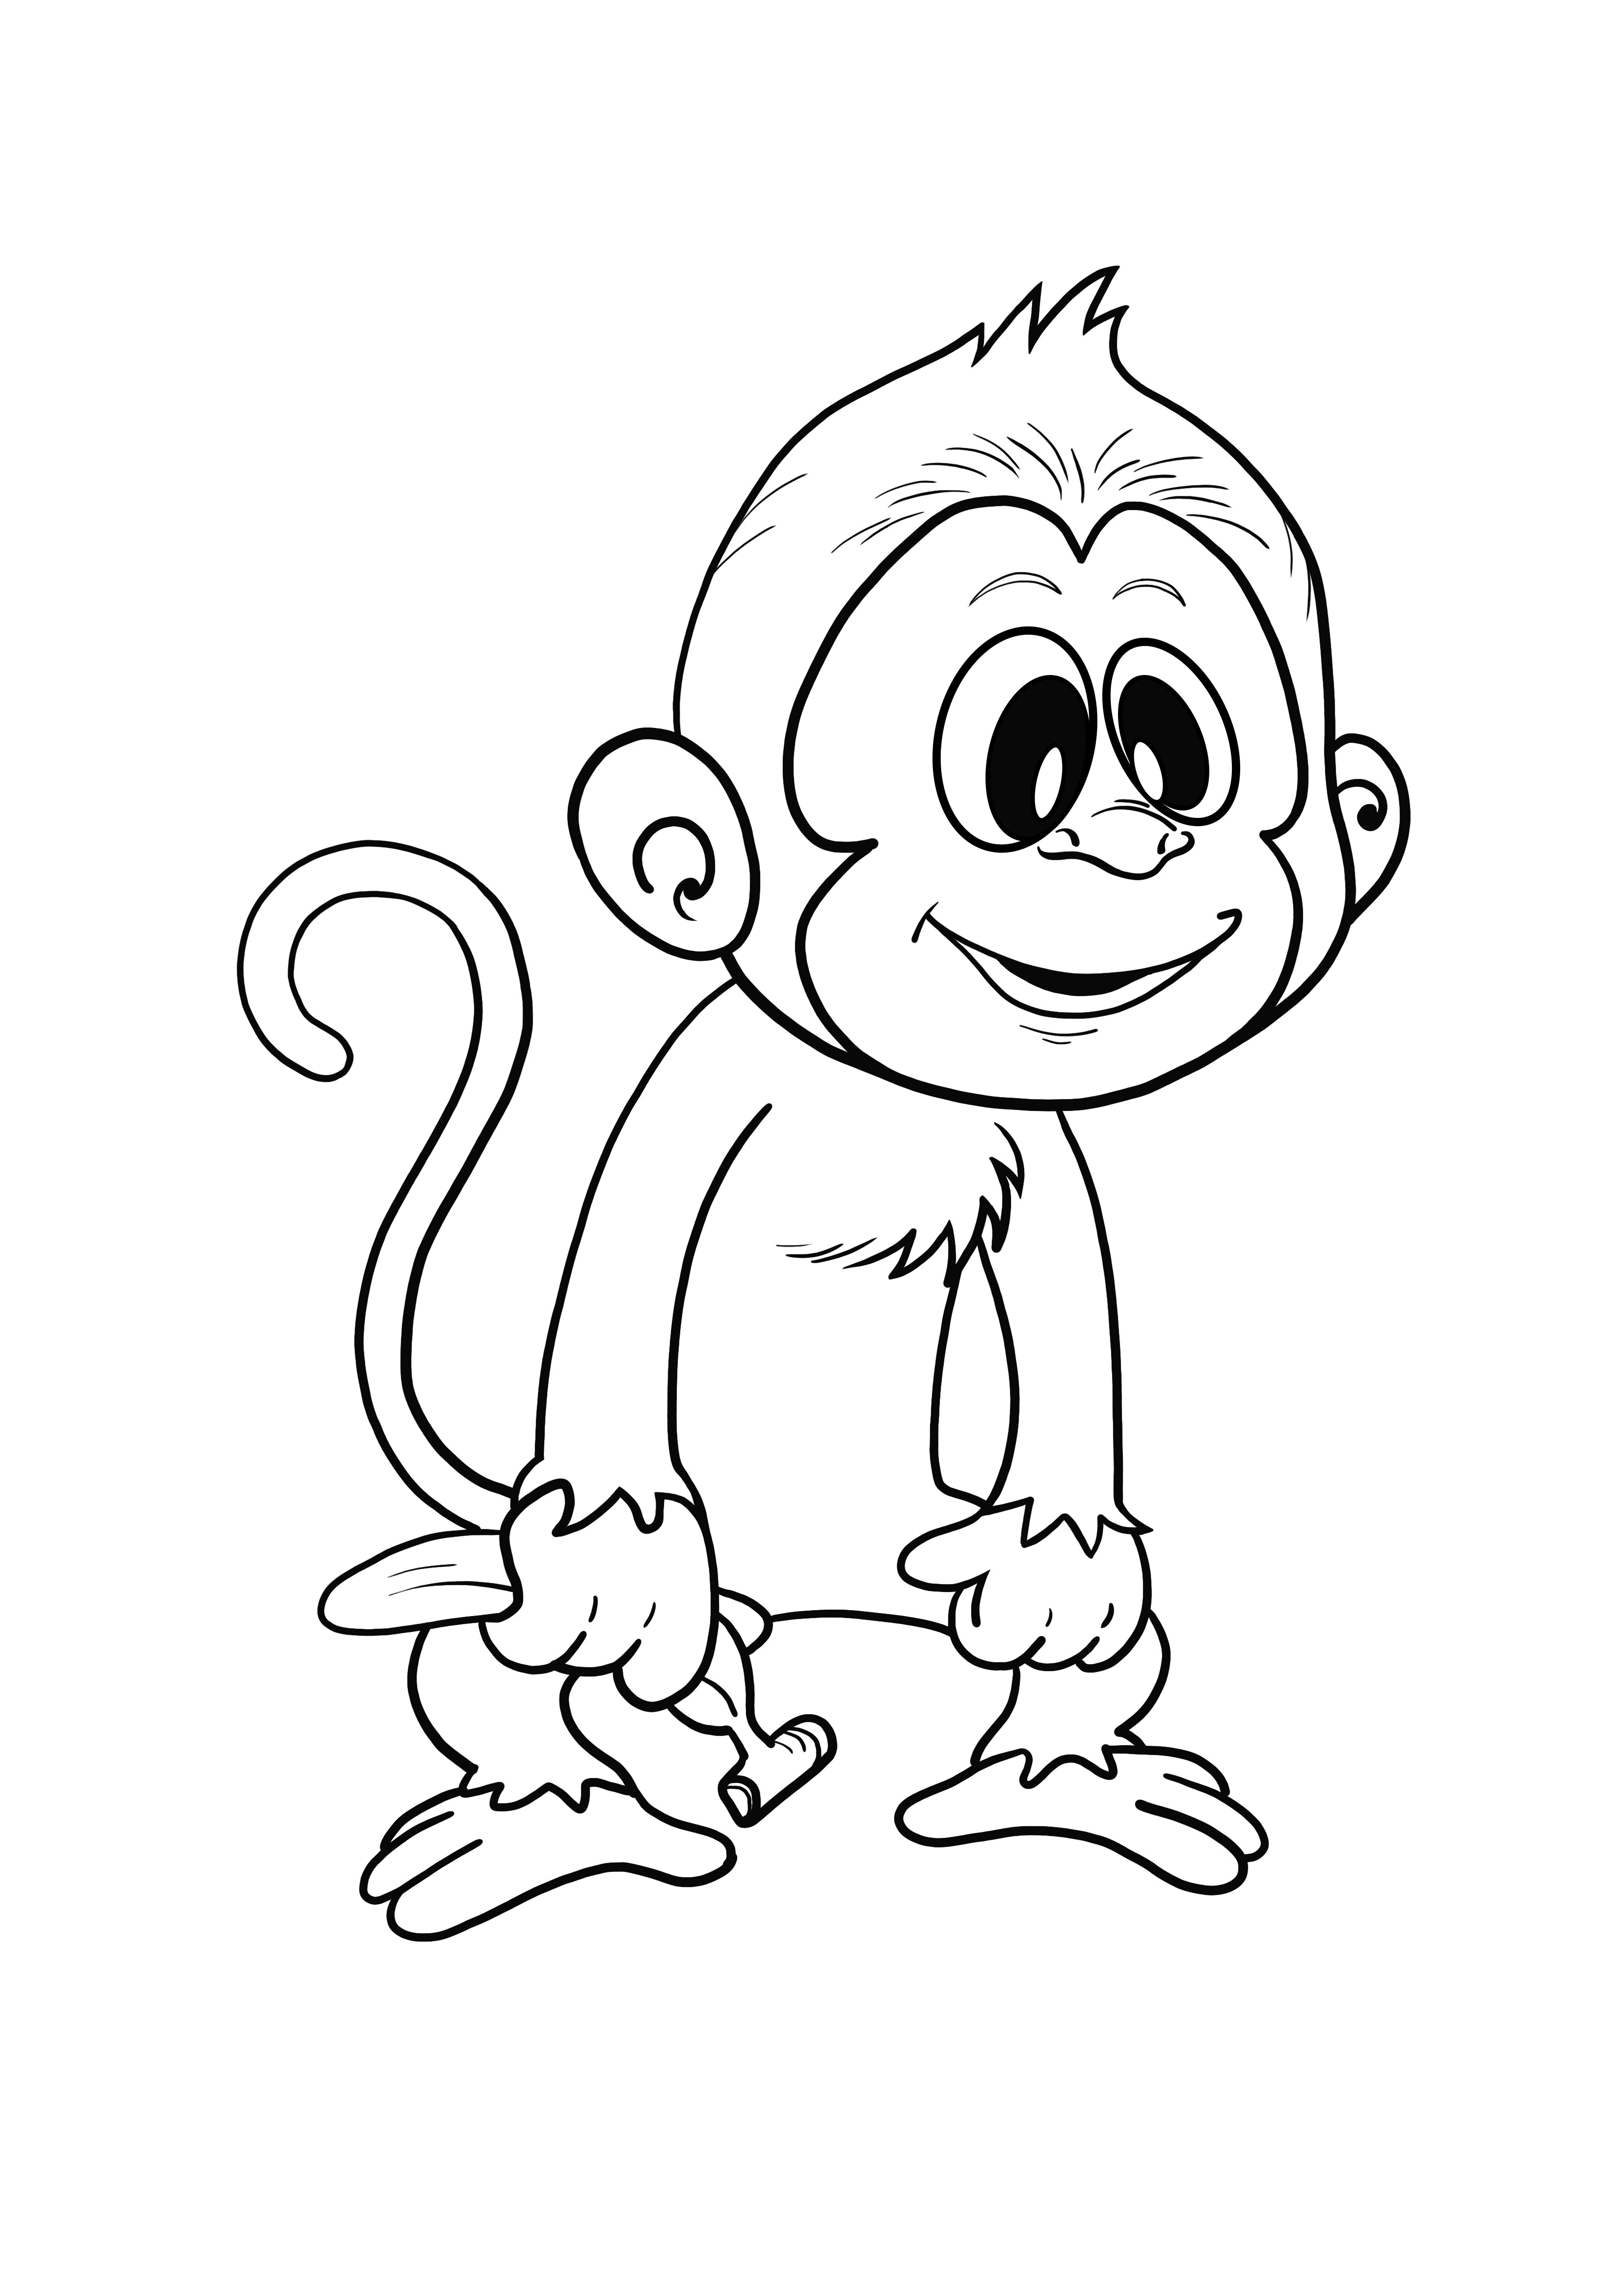 Menő majom egyszerű színező oldal nyomtatásához